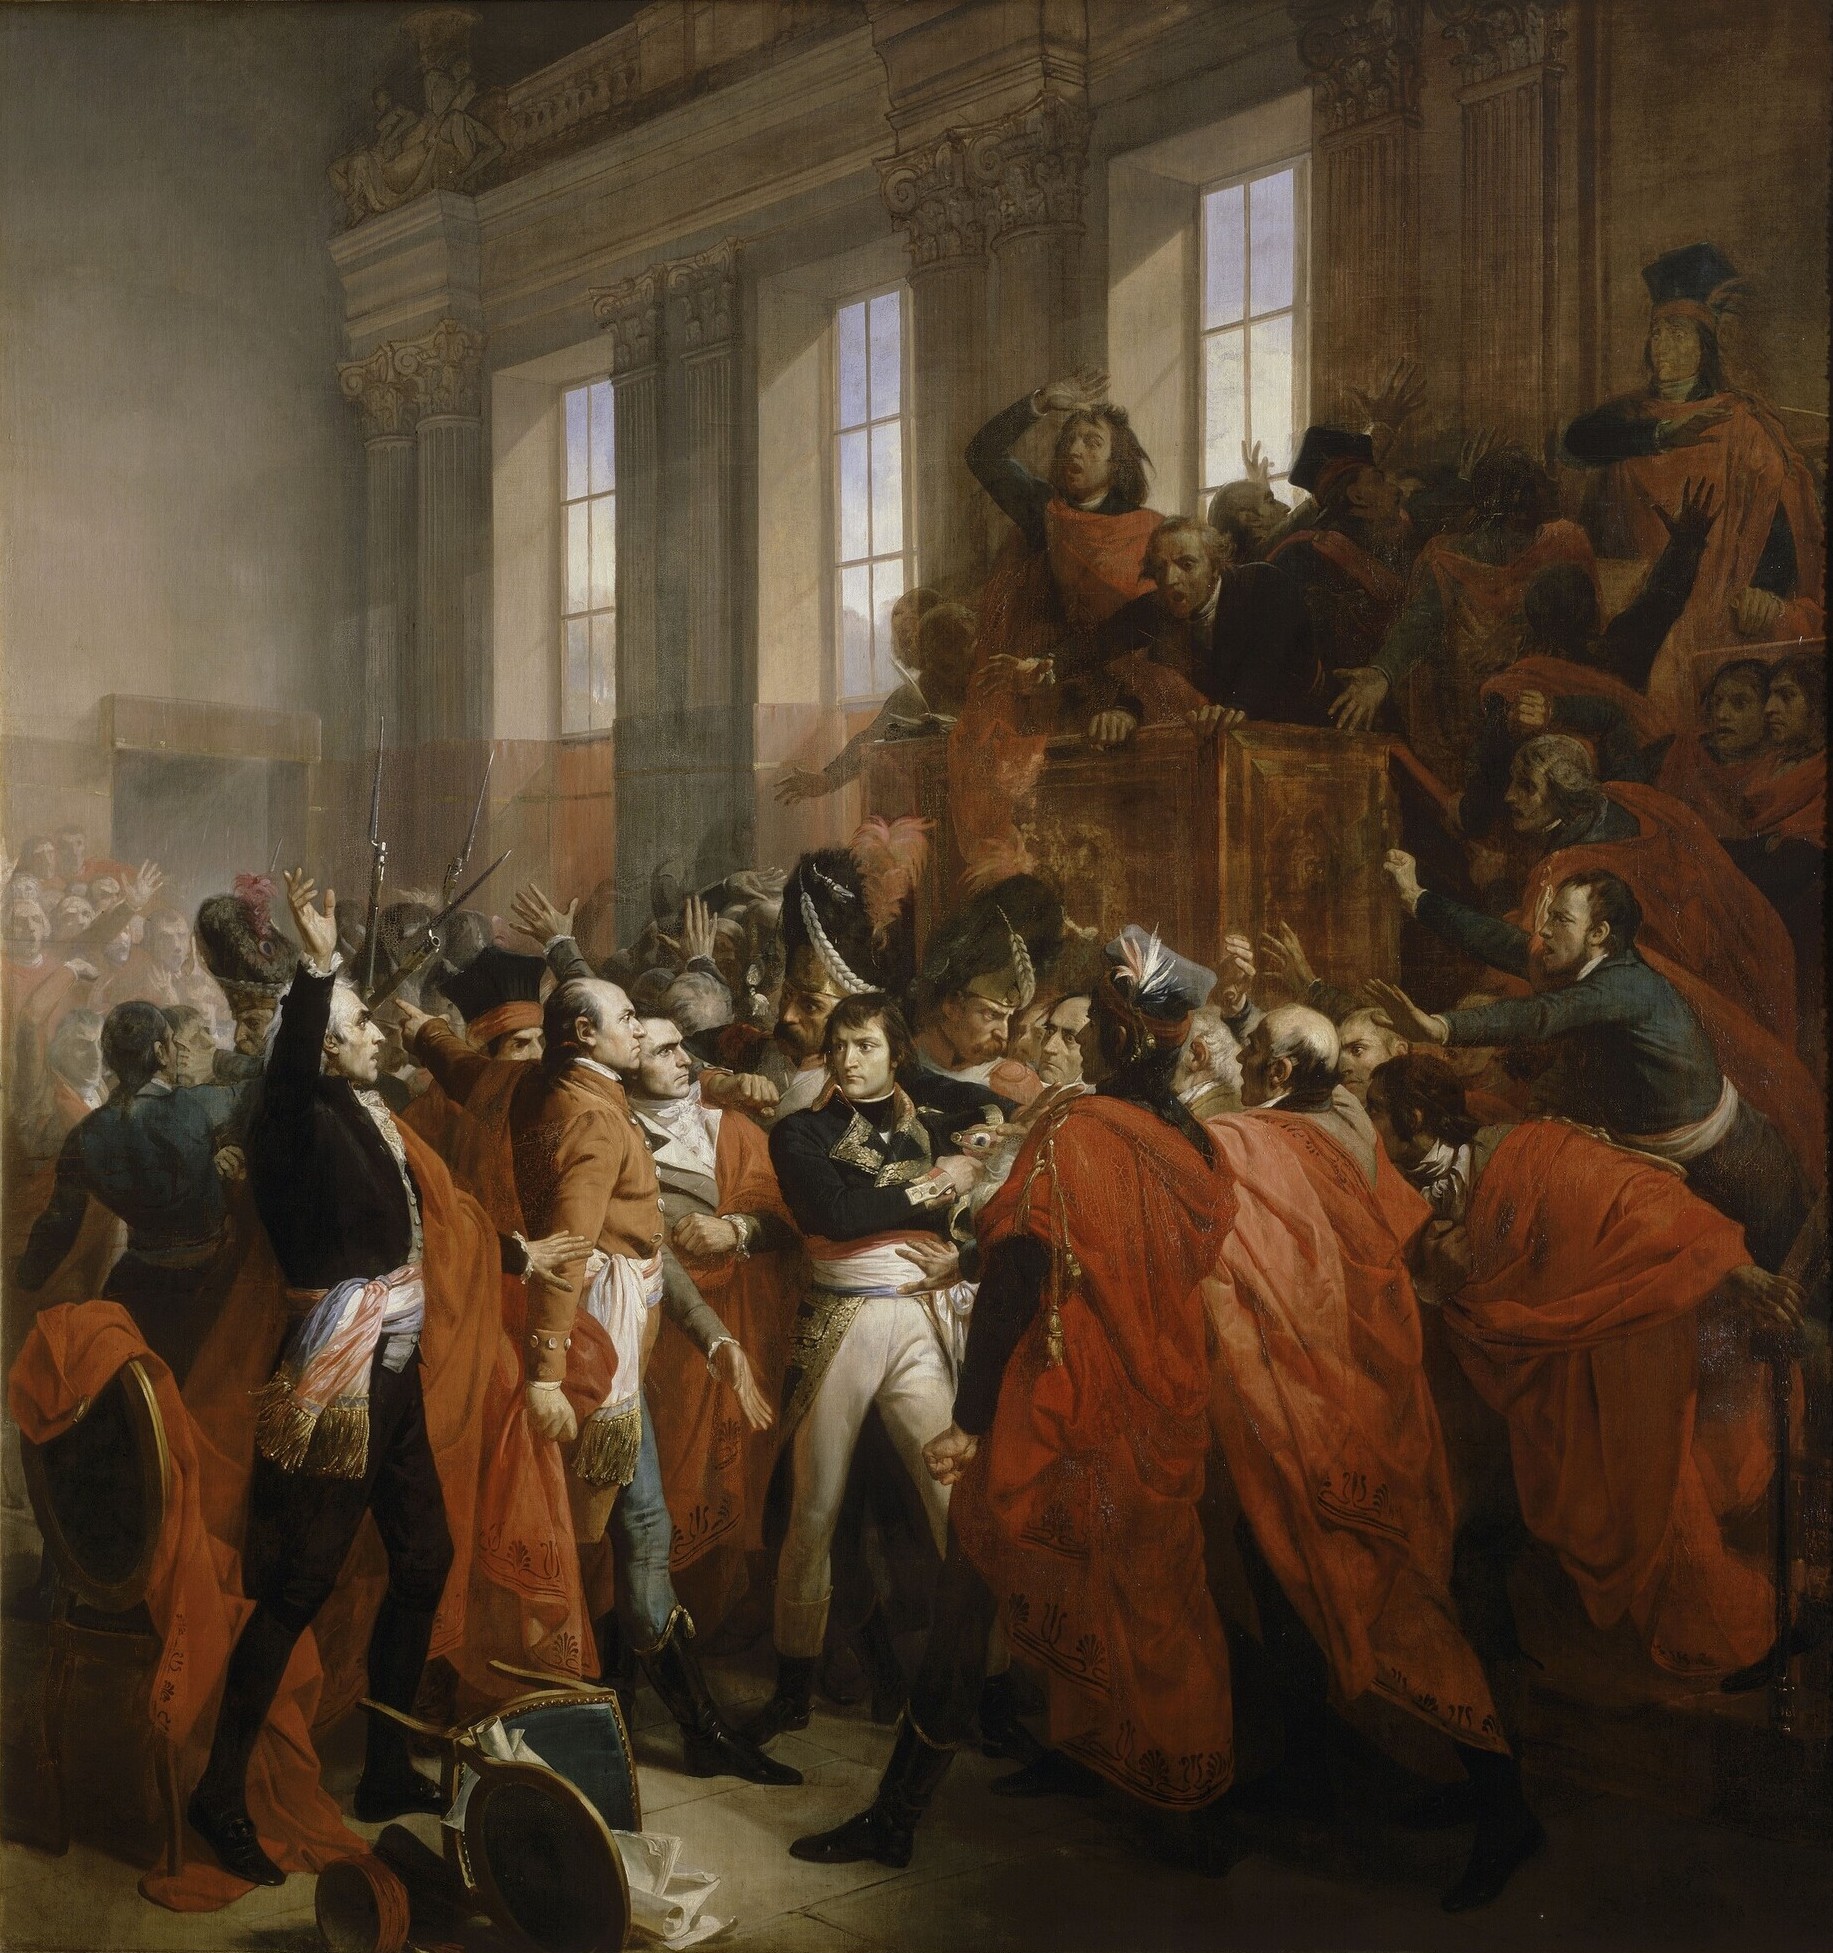 9 de noviembre de 1799 Napoleón derroca al Directorio el 18 de brumario